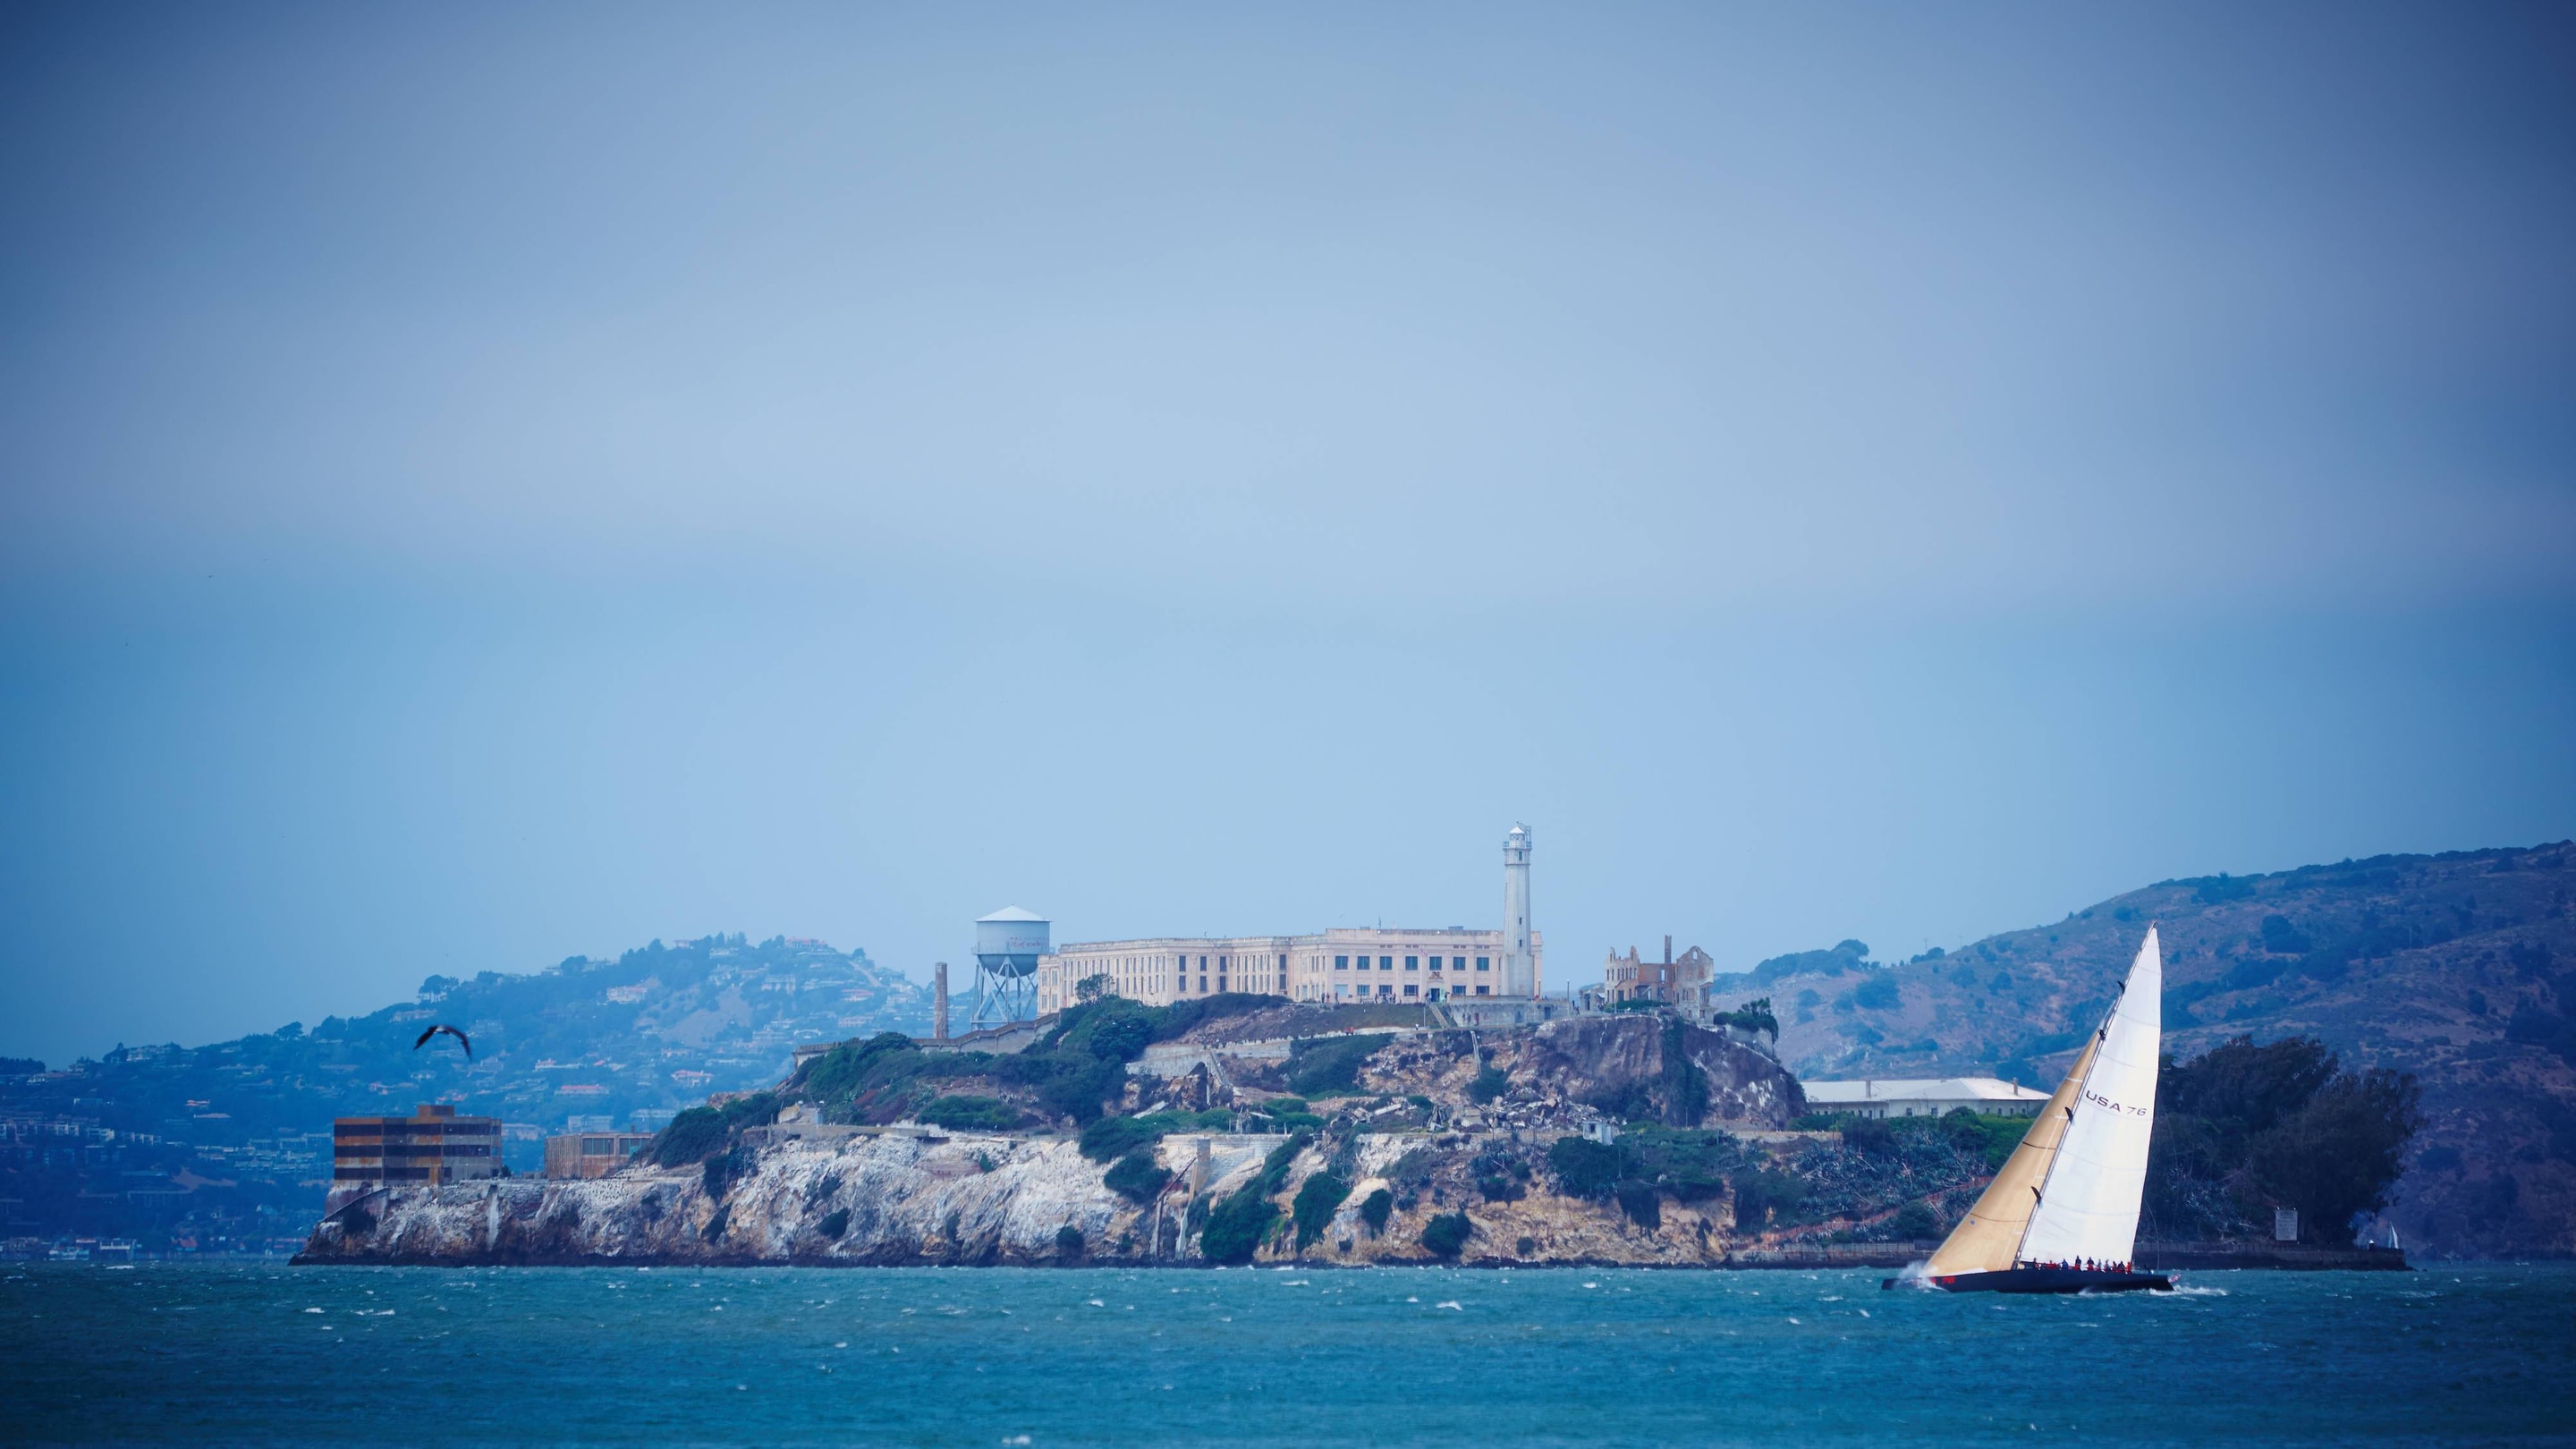 View of Alcatraz